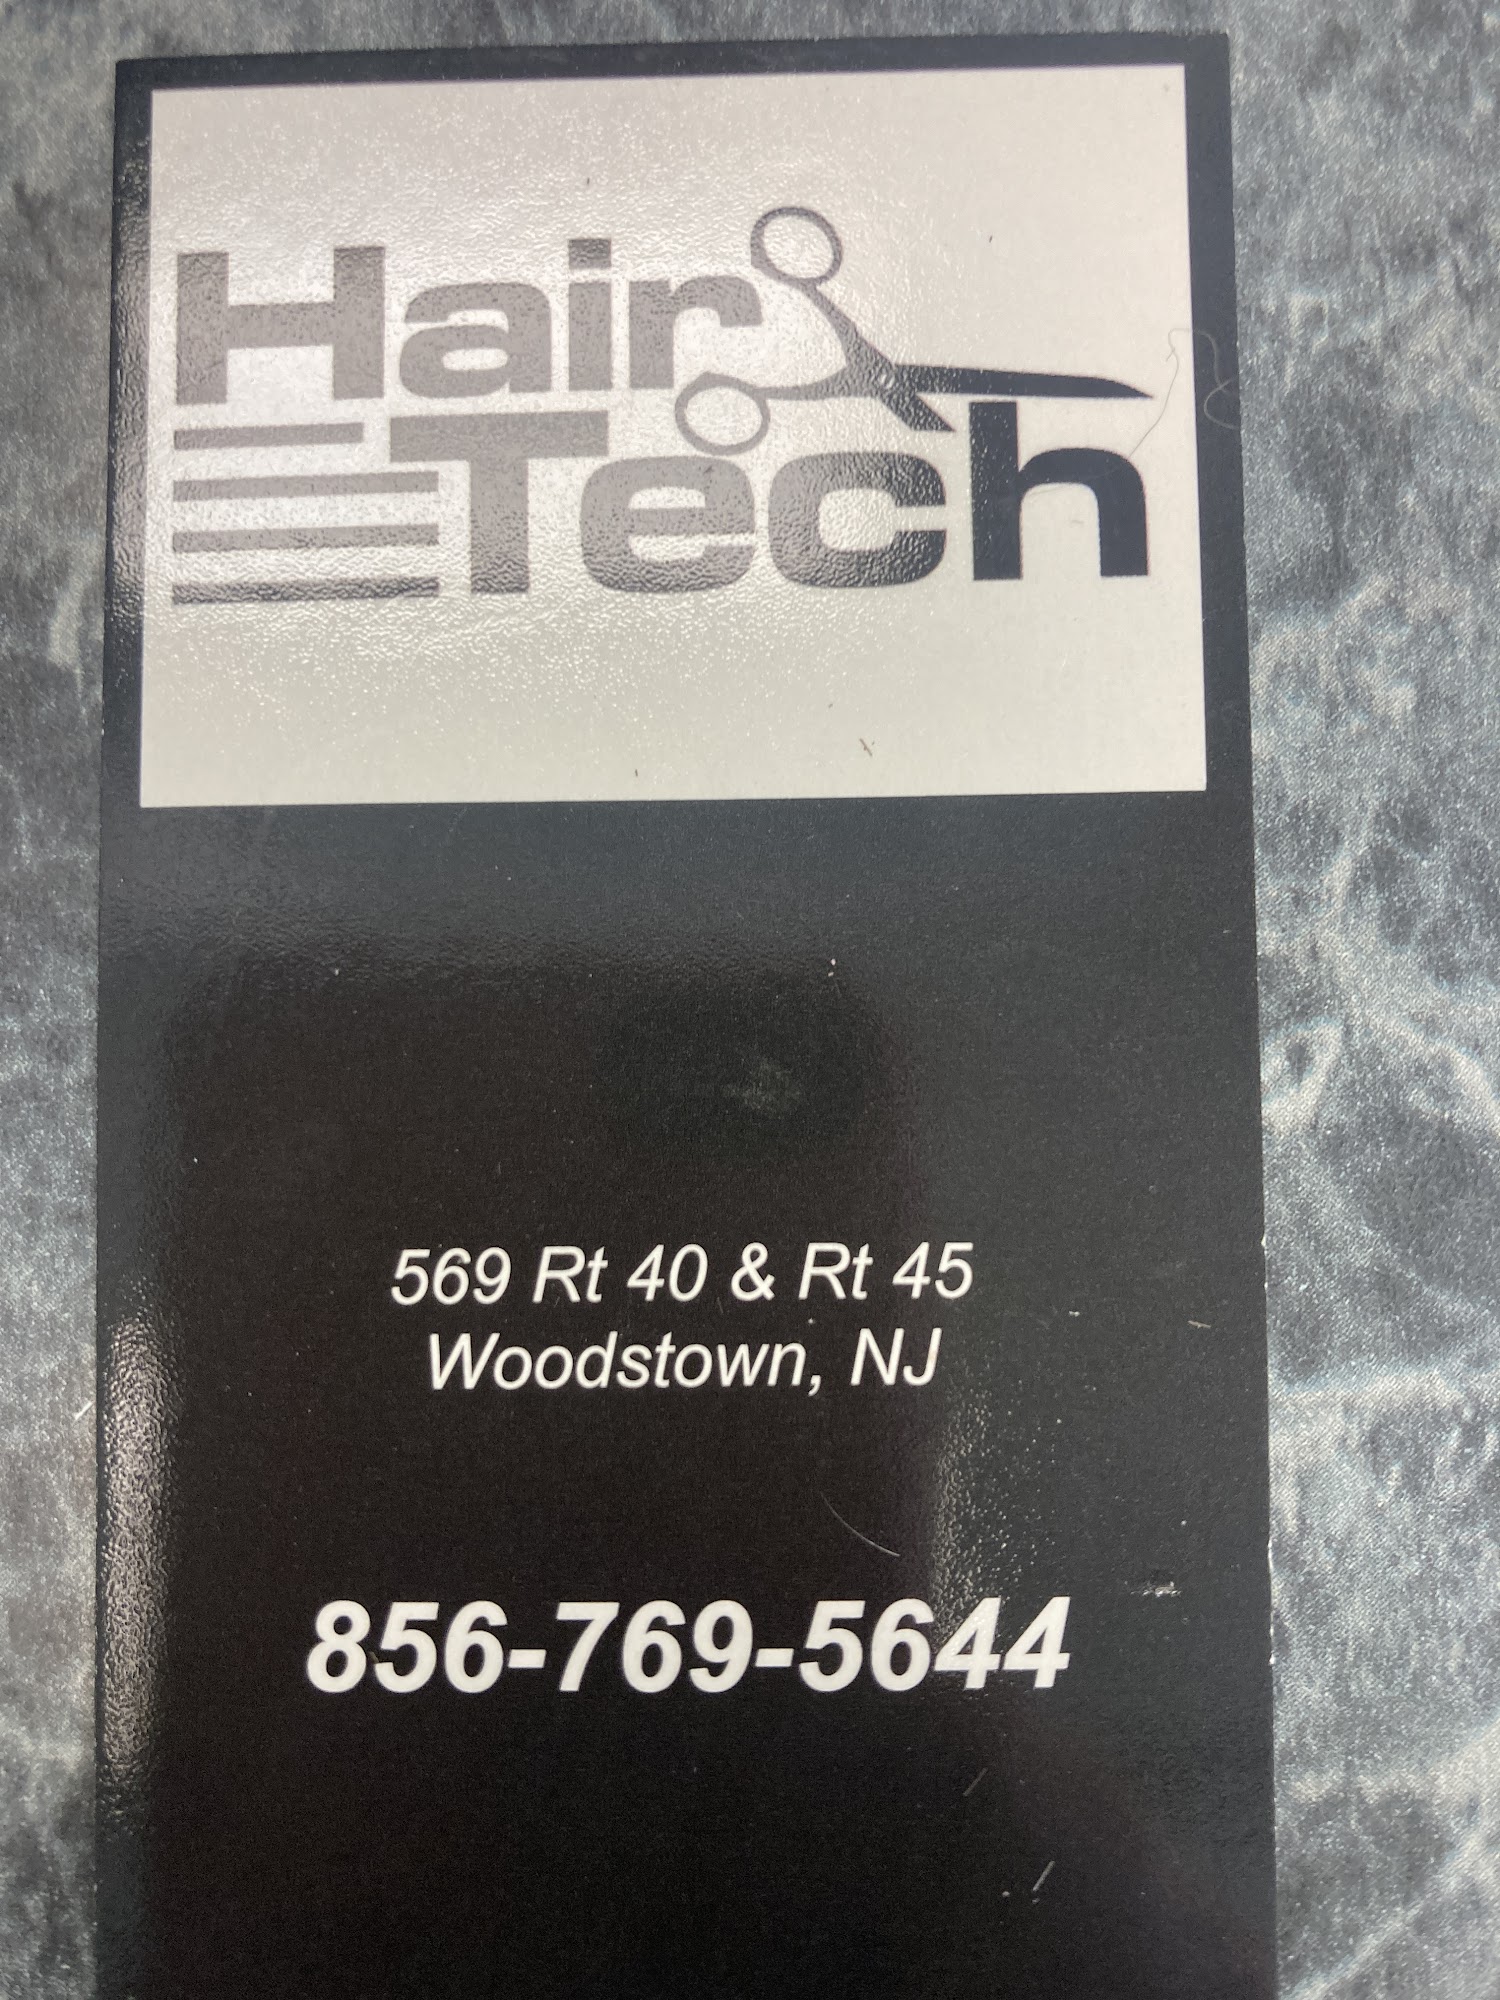 Hair Tech Inc 849C NJ-45, Pilesgrove New Jersey 08098